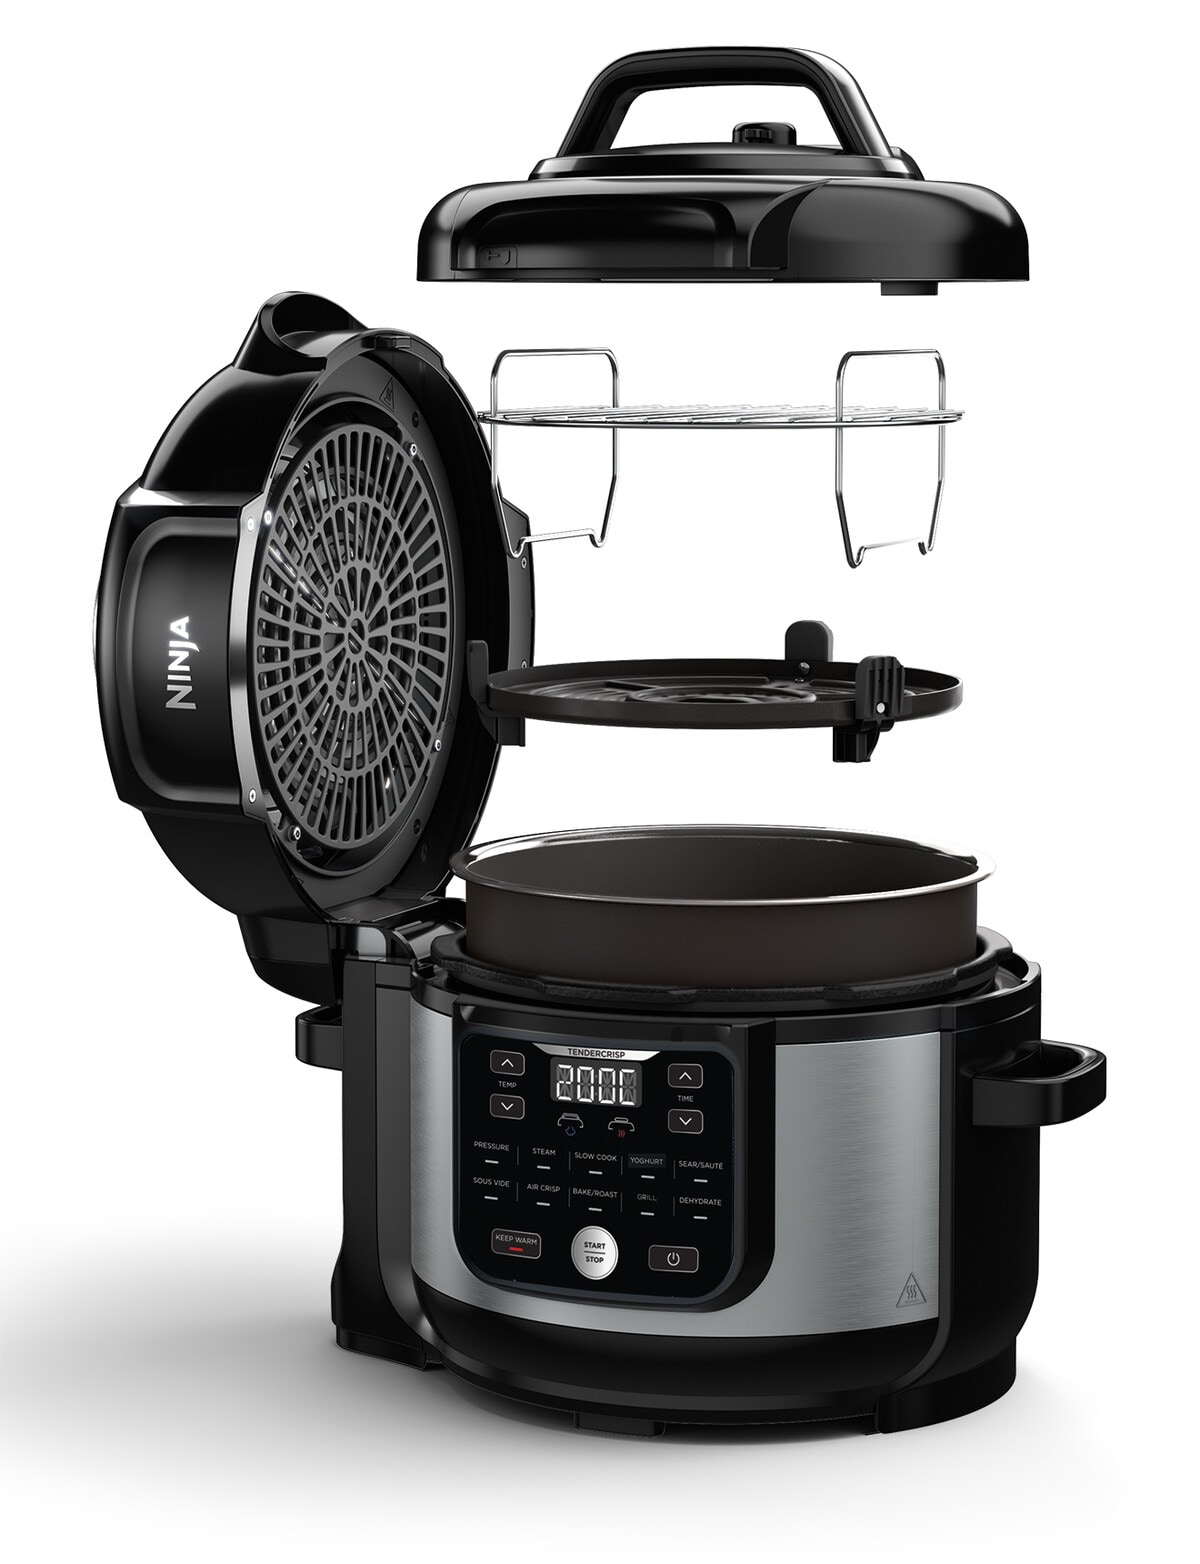 Ninja Foodi Pro Pressure Cooker and Air Fryer